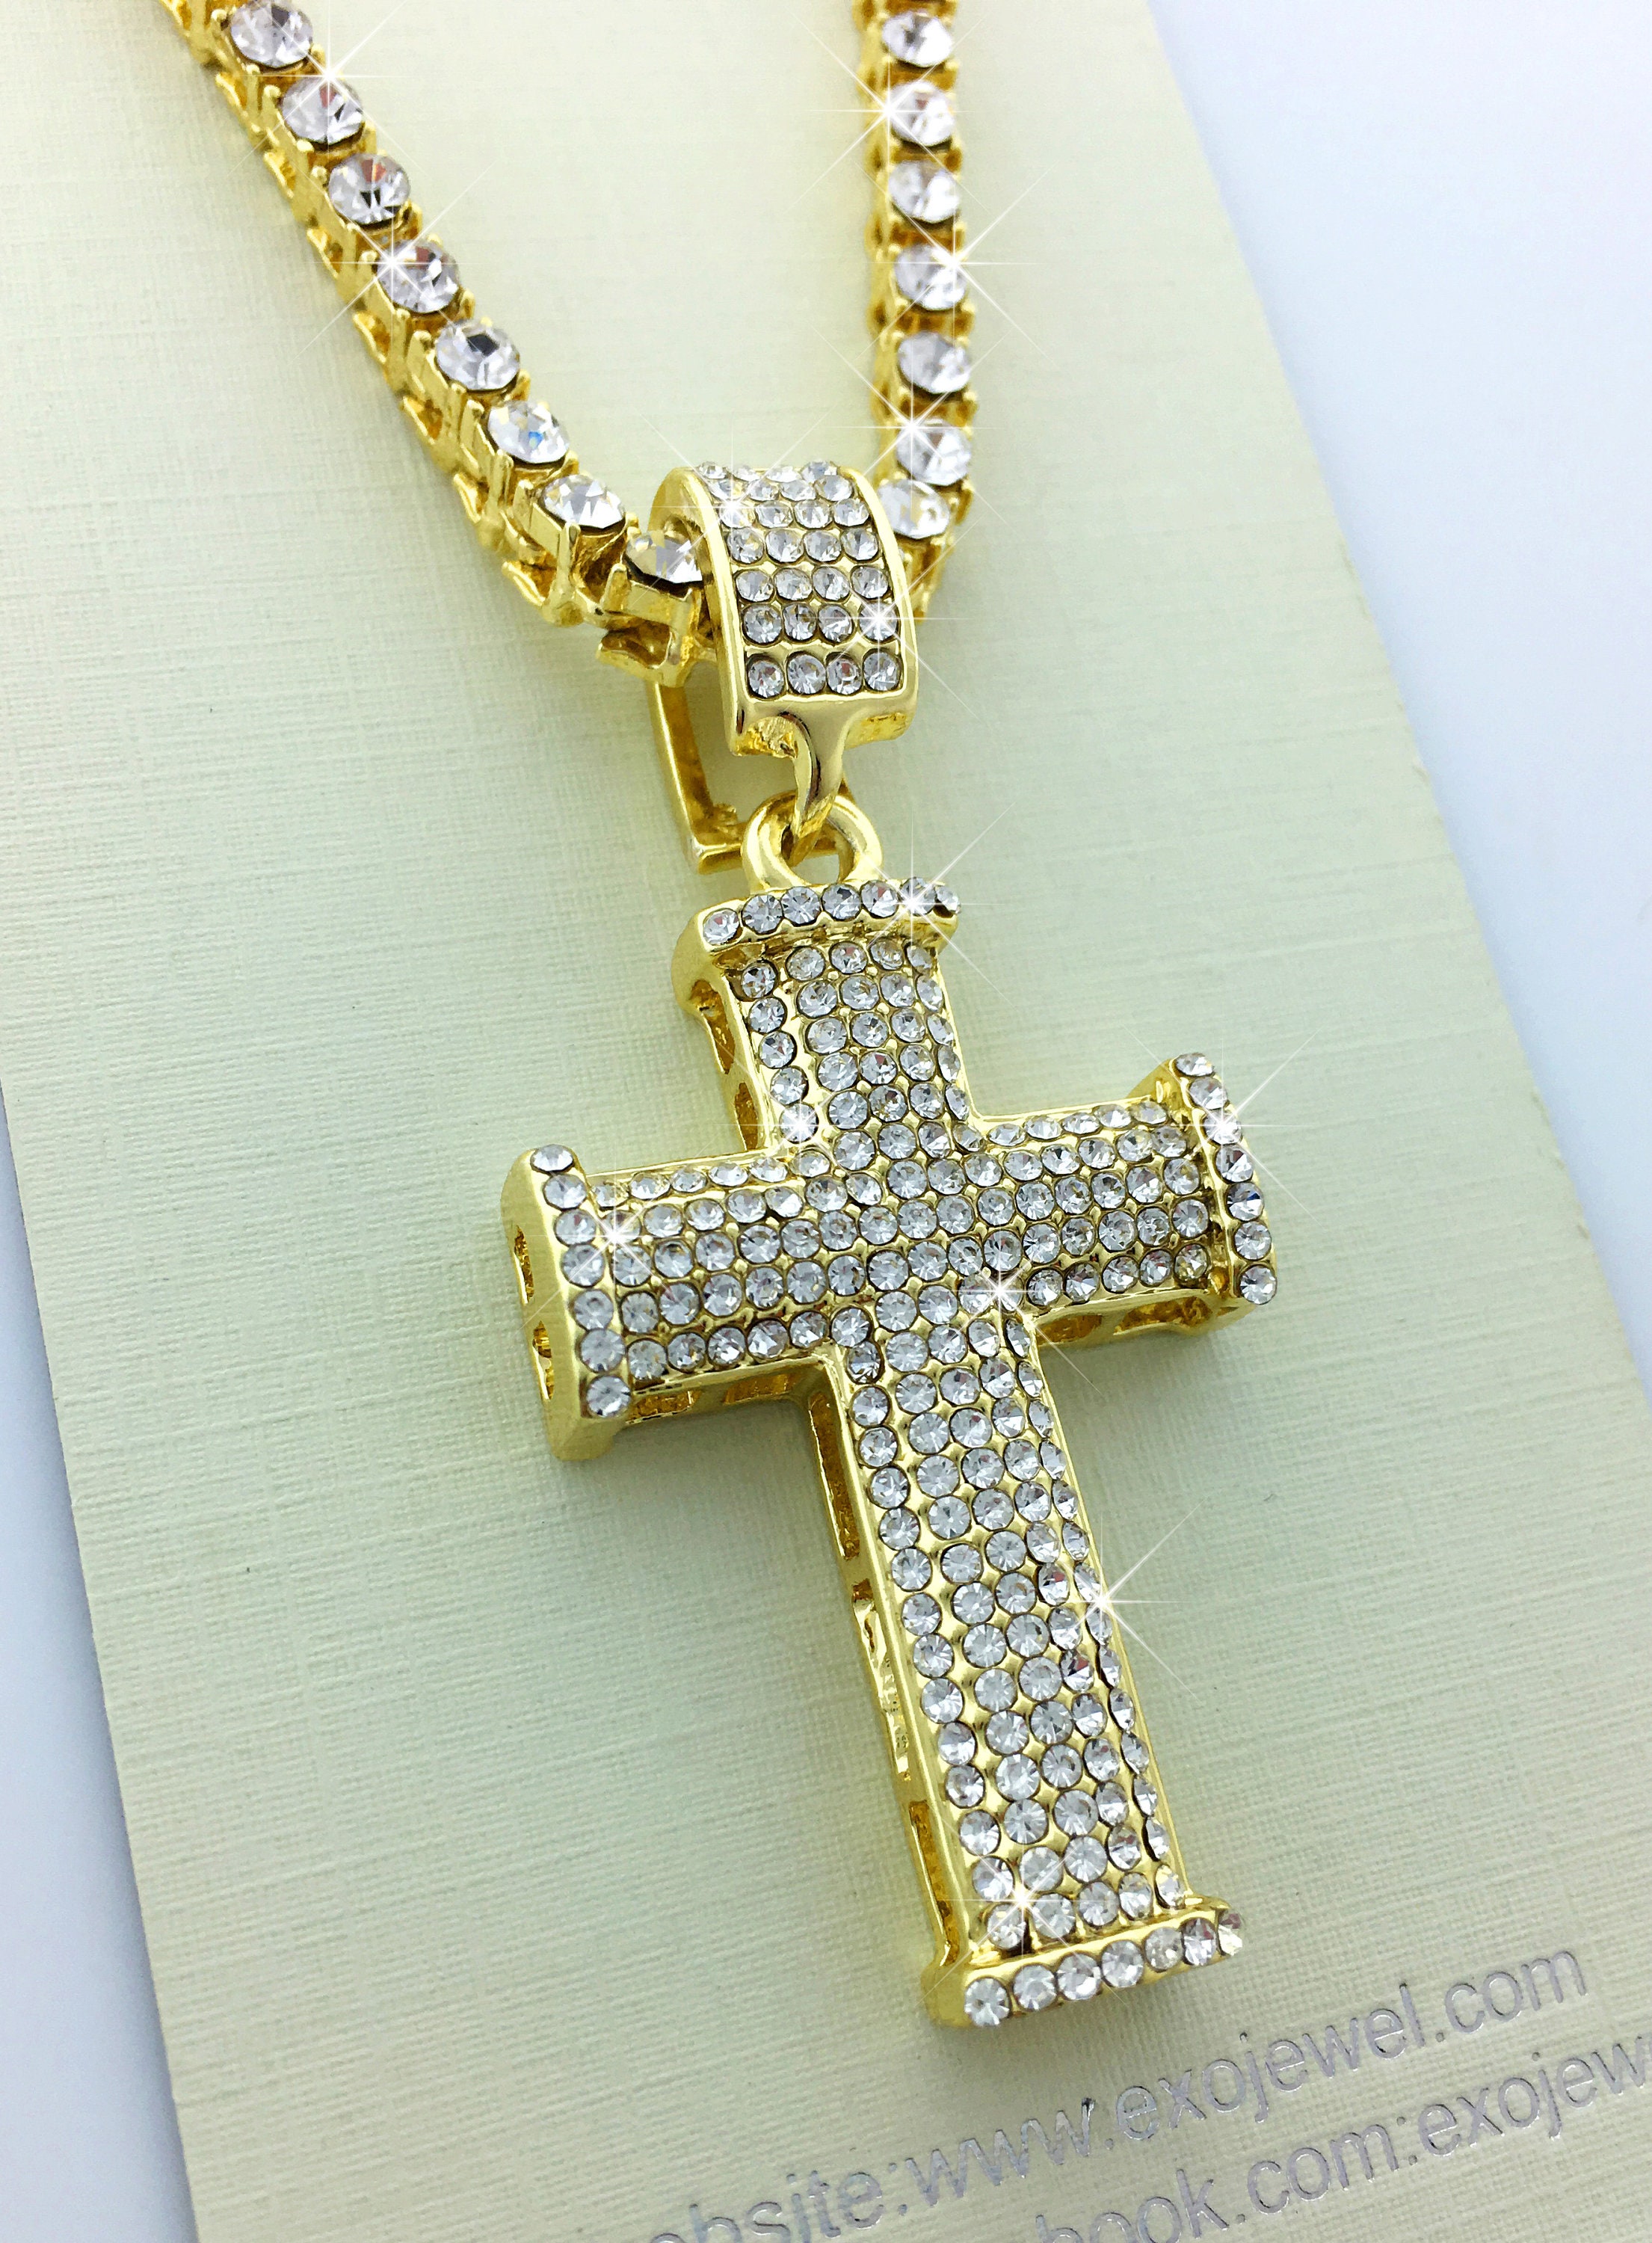 CZ Diamond Pave Cross Pendant Necklace - Etsy